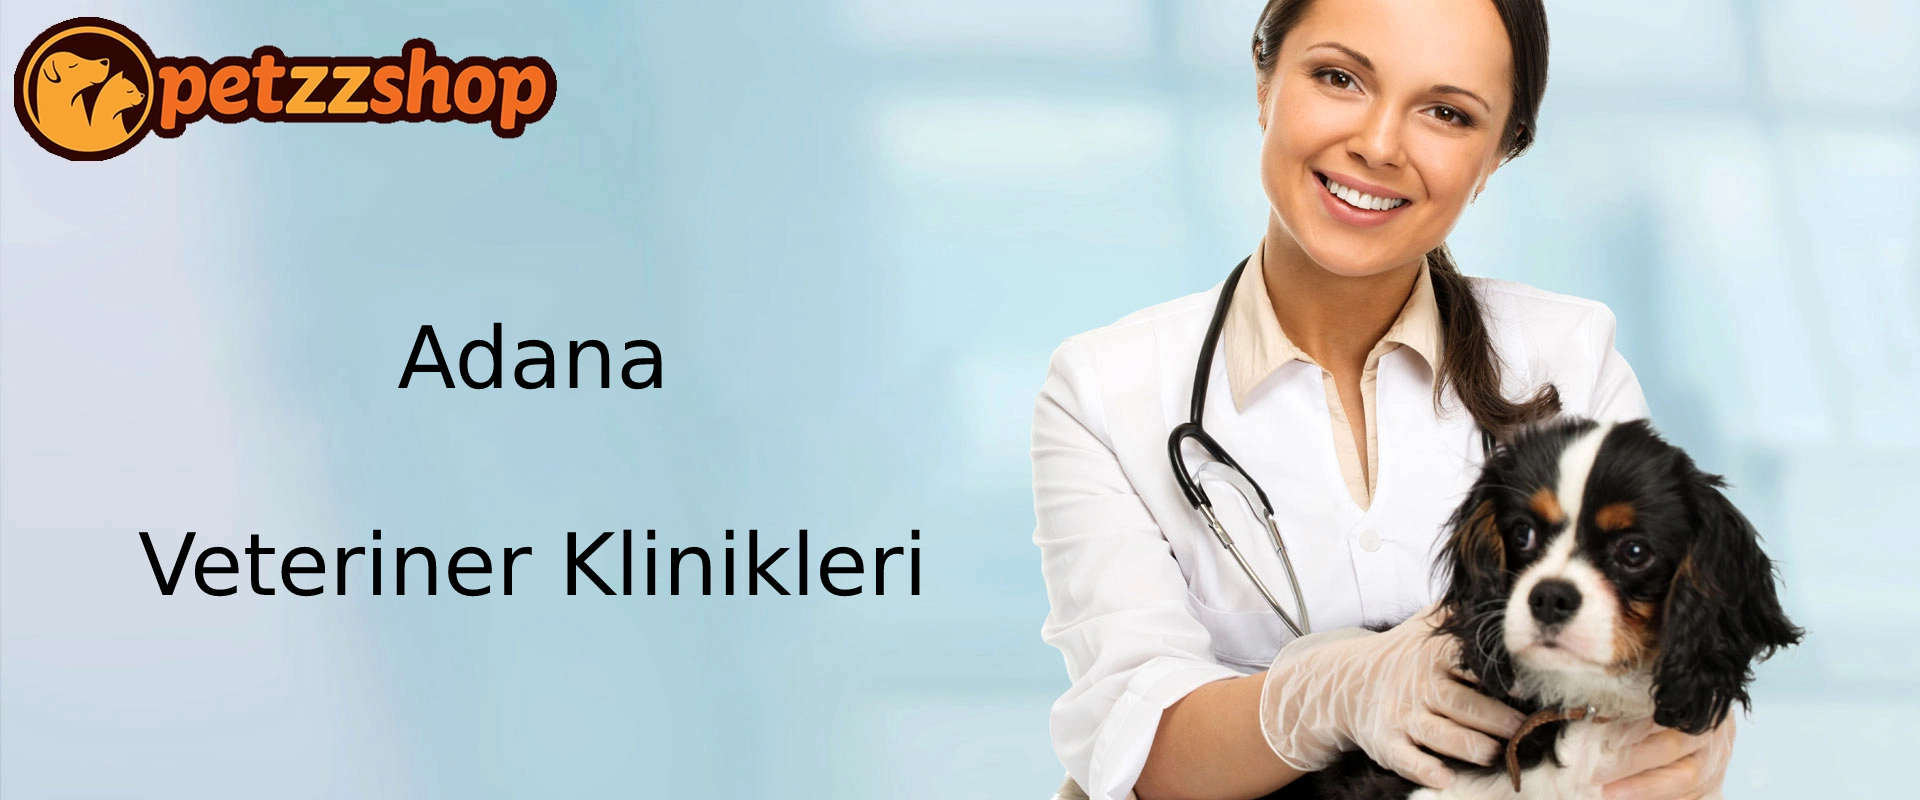 Adana Veteriner Klinikleri